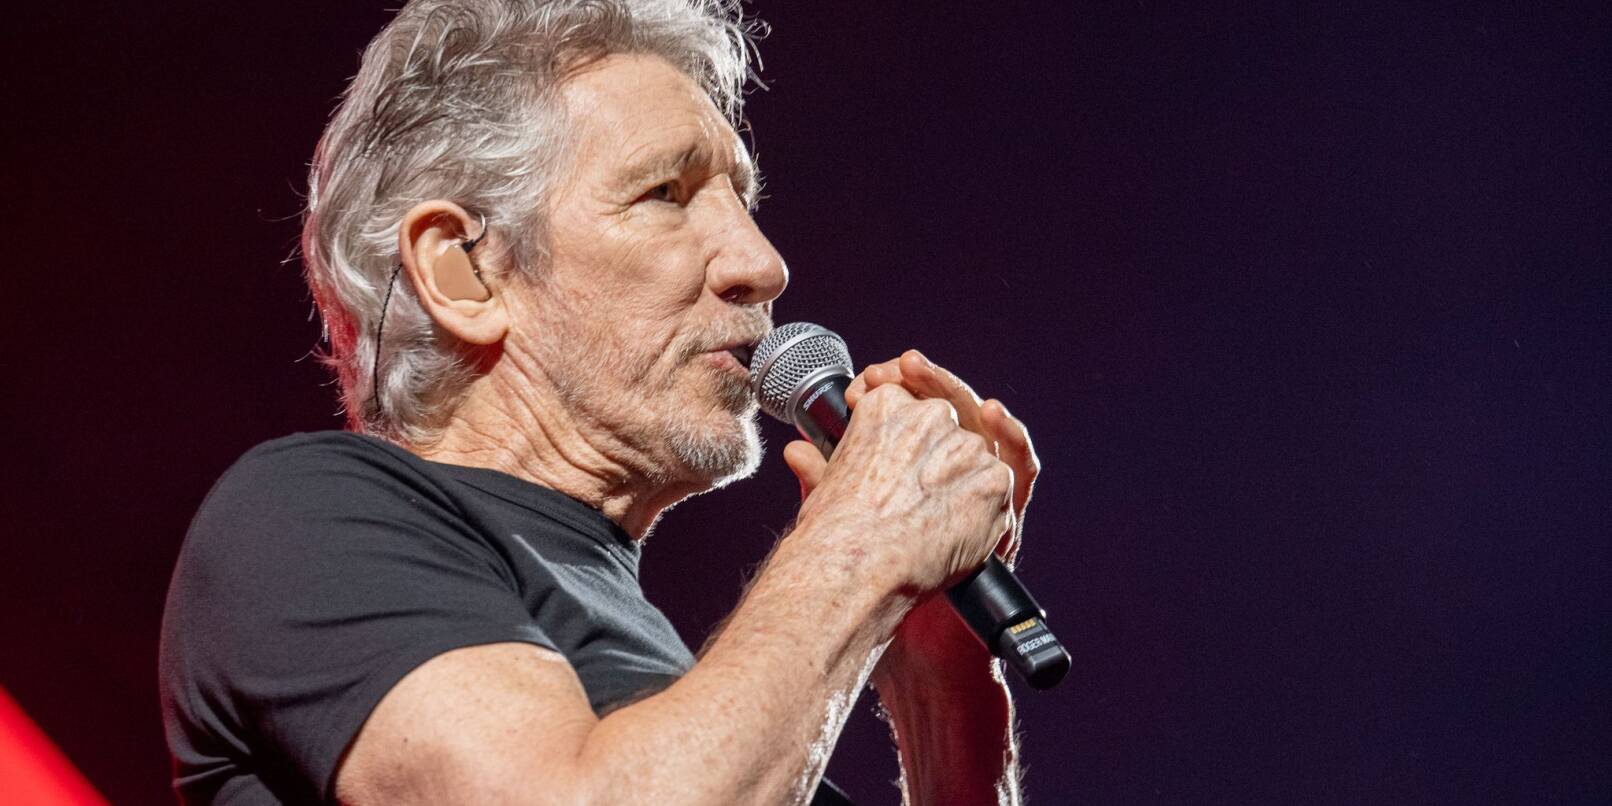 Roger Waters, britischer Sänger und Mitbegründer der Rockband Pink Floyd, bei einem Auftritt.